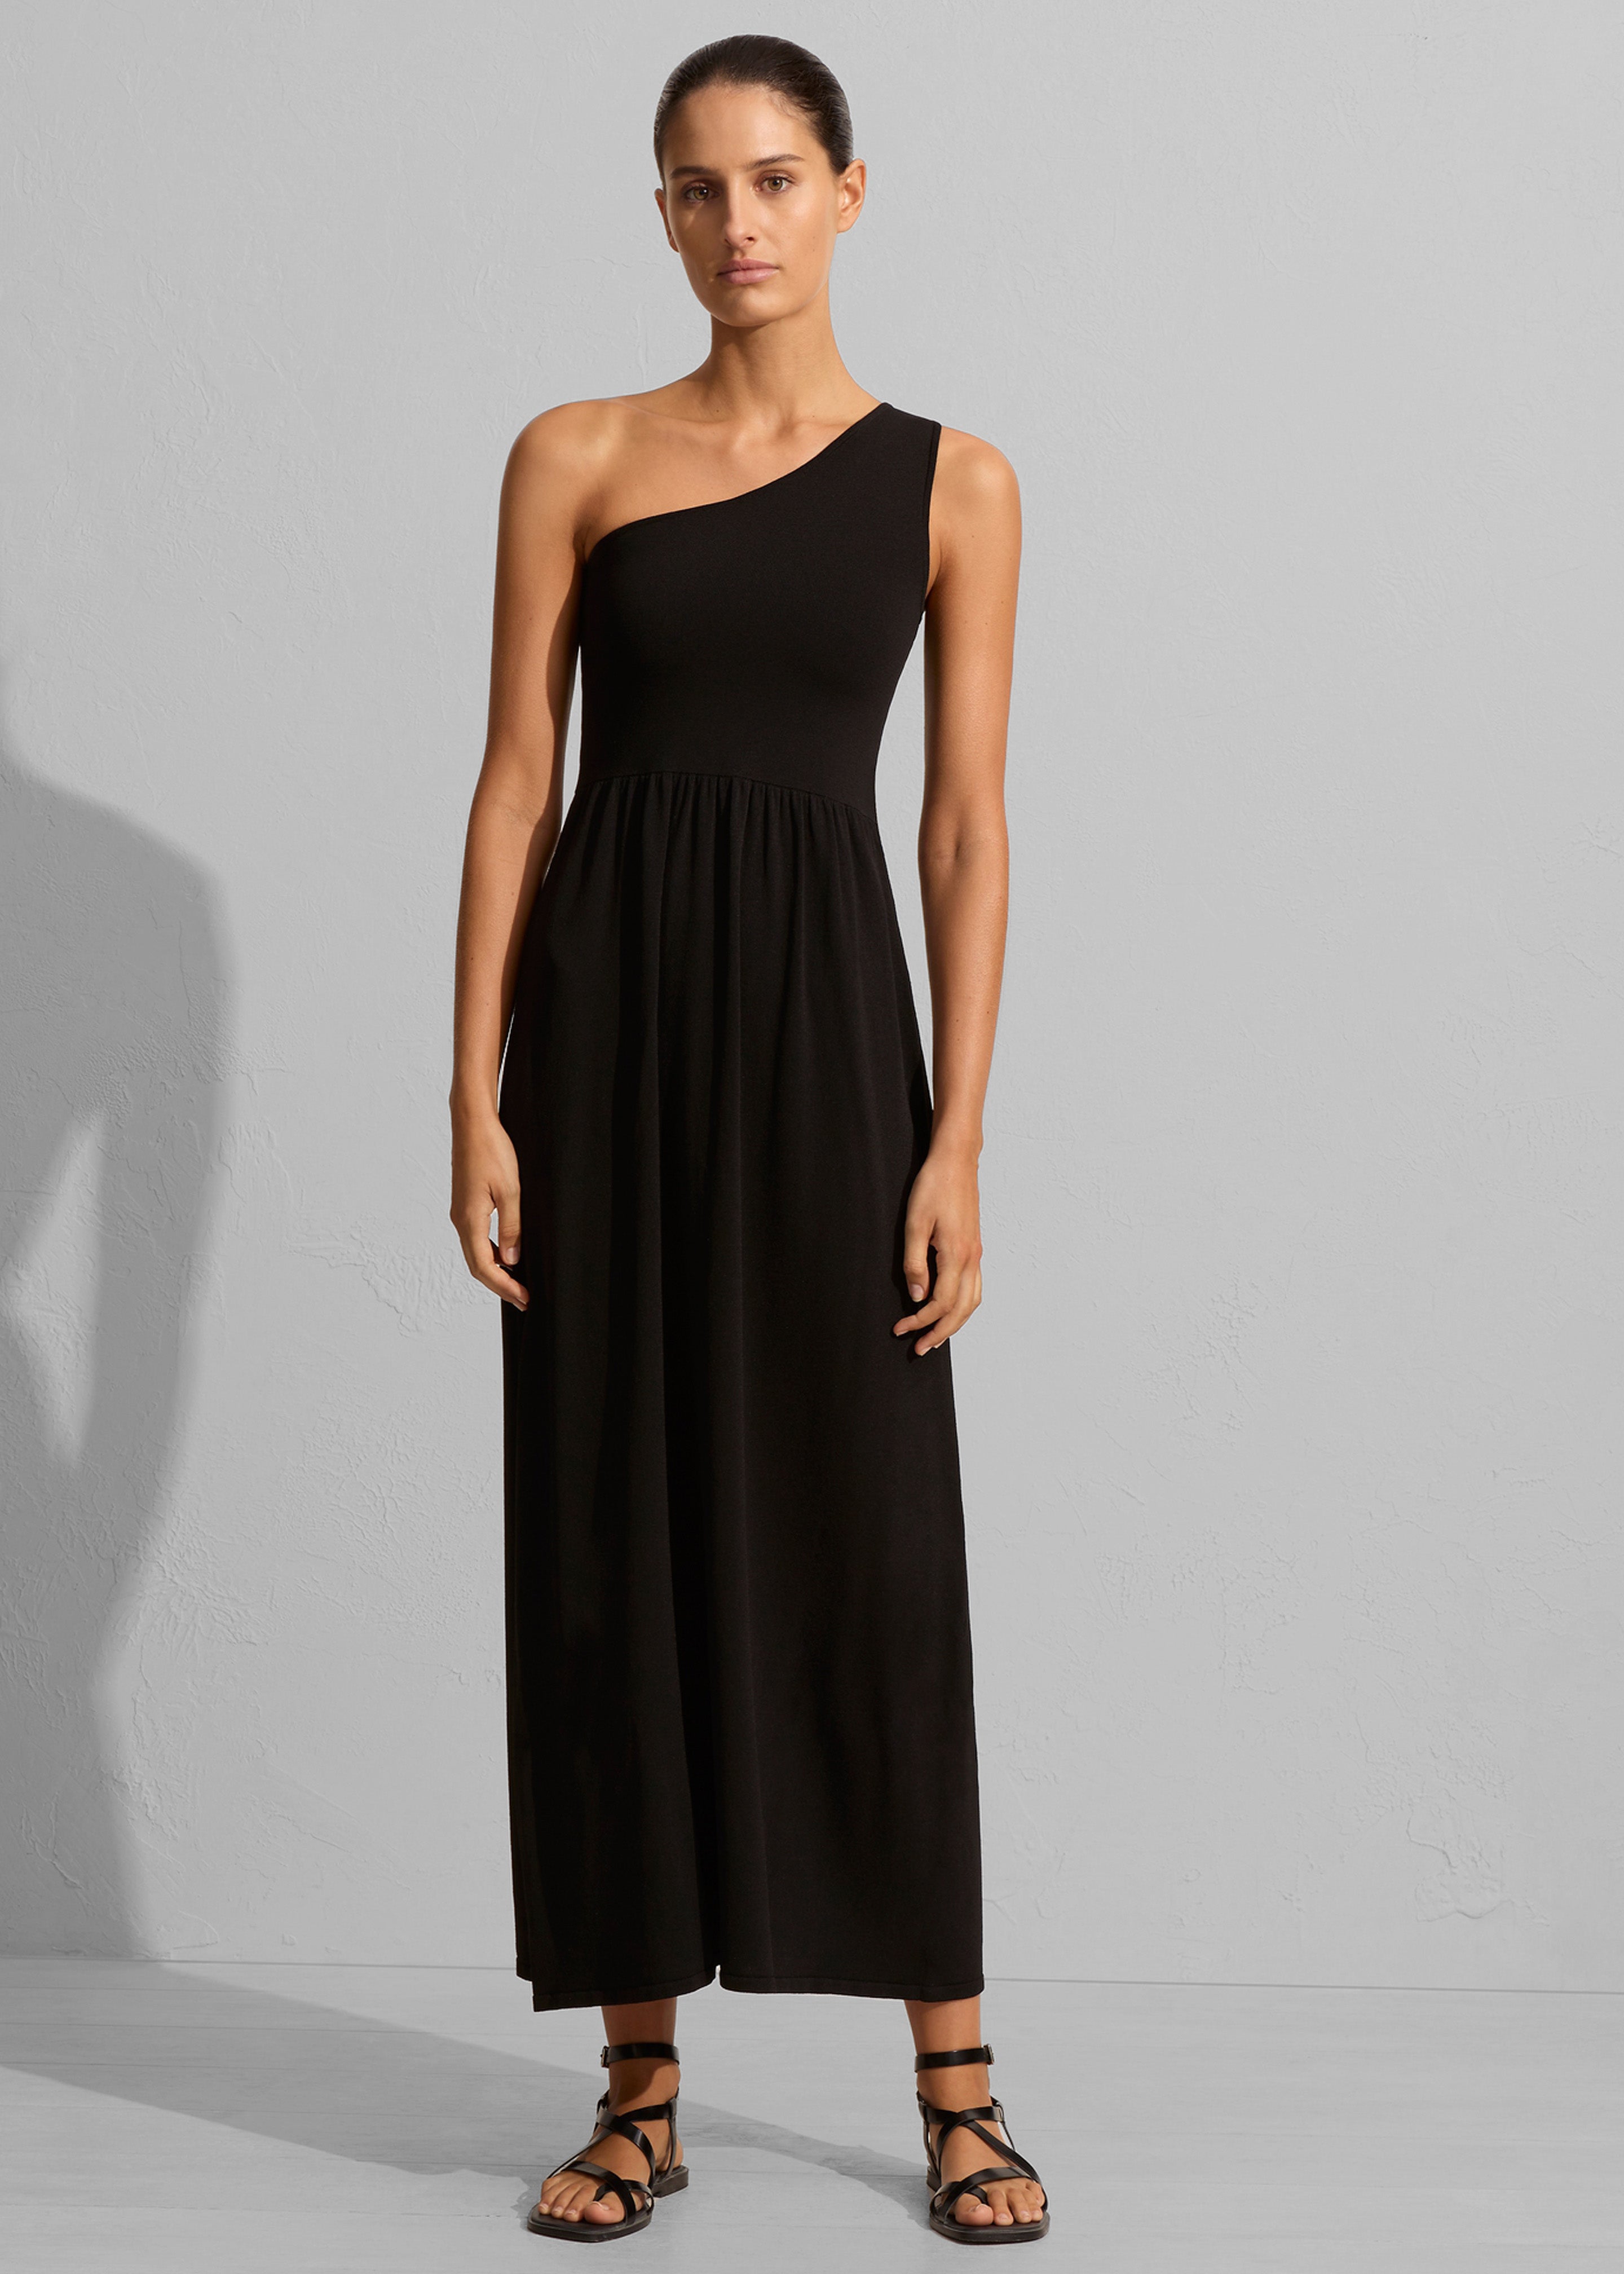 Matteau Asymmetric Knit Dress - Black - 3